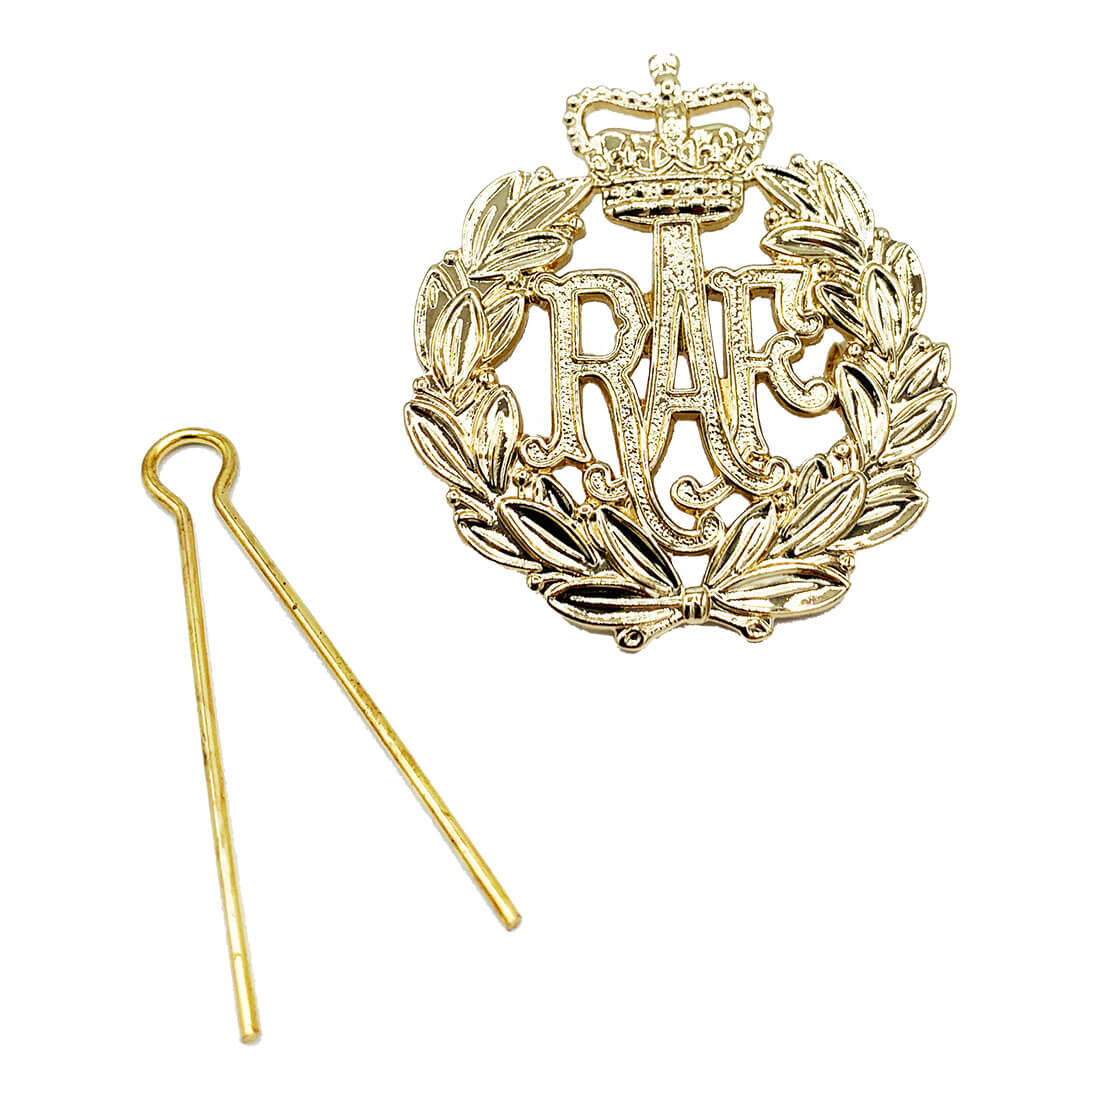 Royal Air Force Cap Badge - John Bull Clothing